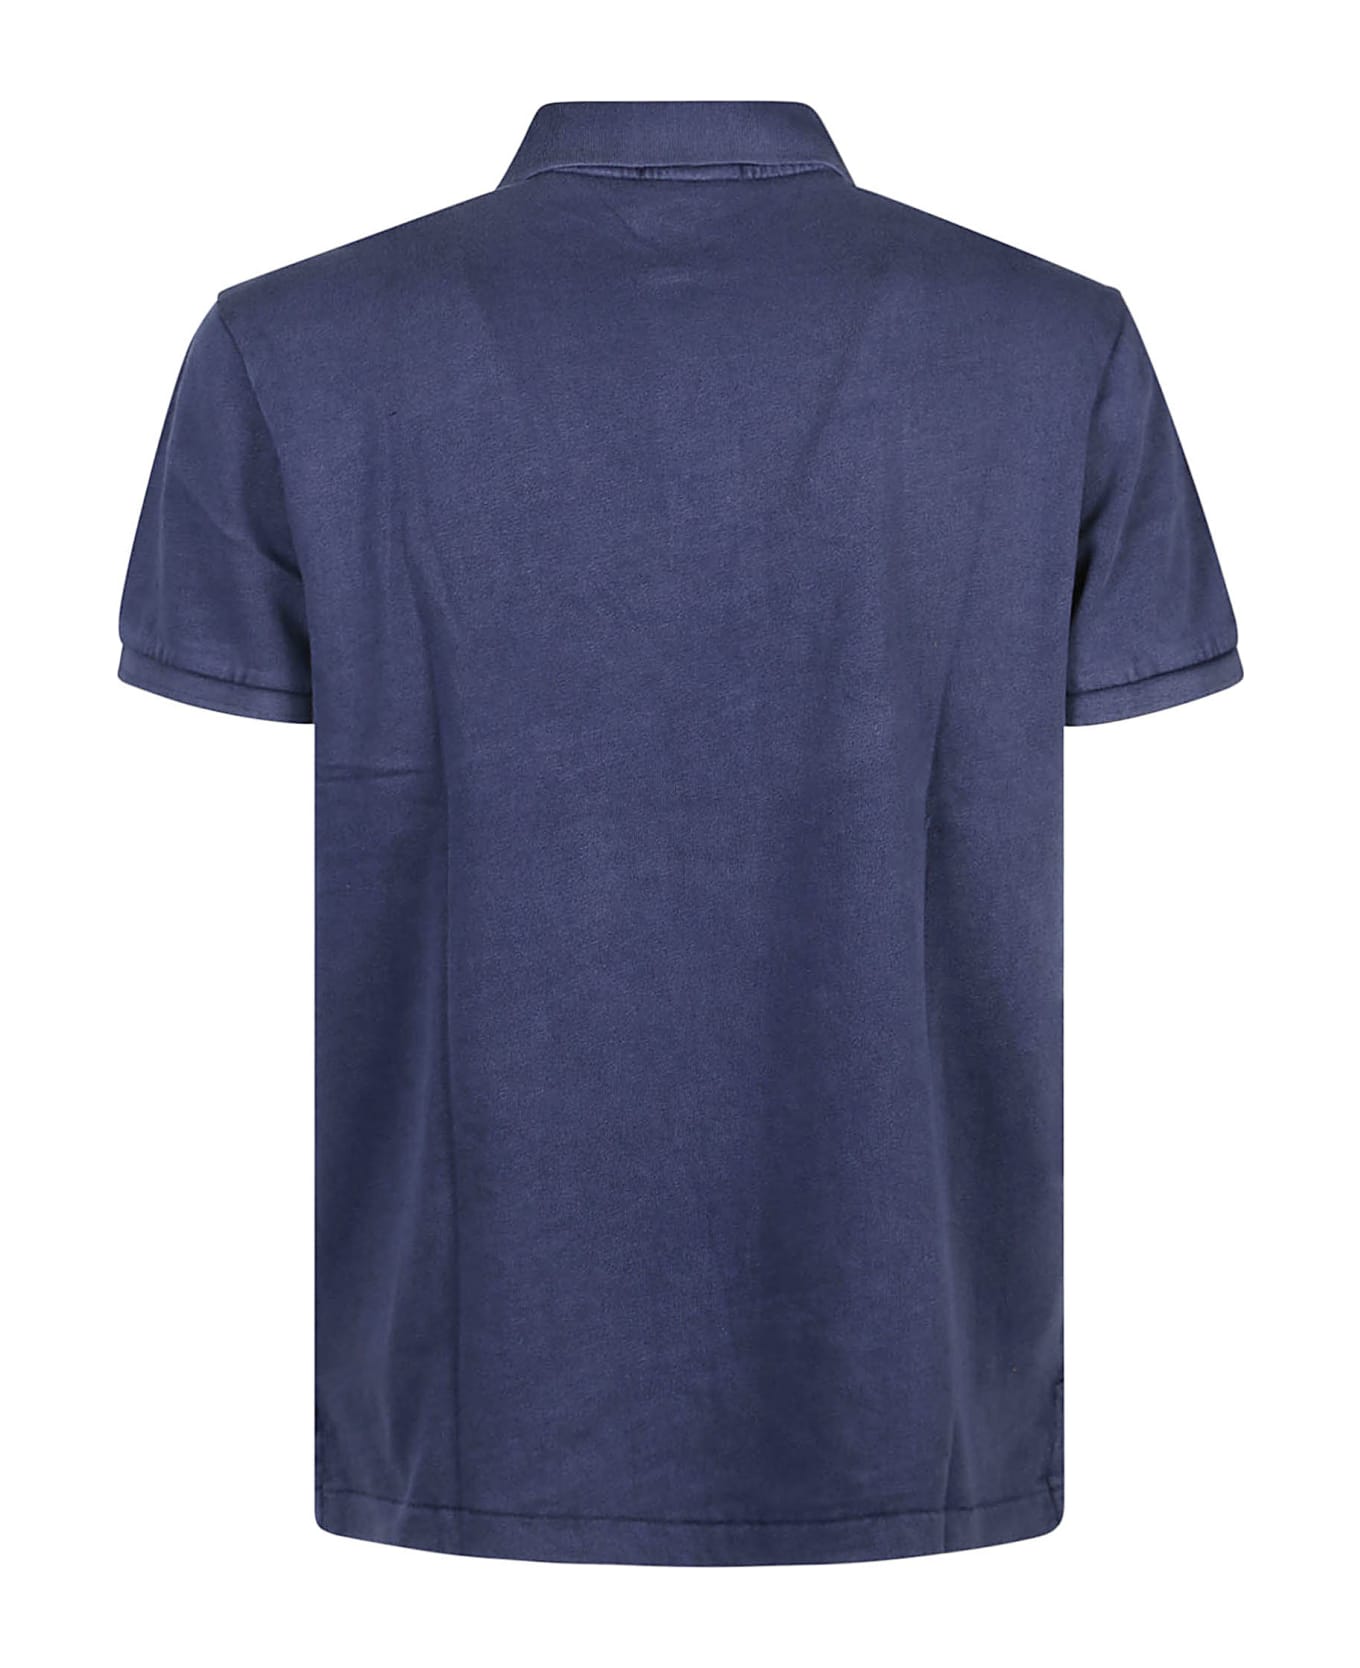 Polo Ralph Lauren Short Sleeve Polo Shirt - Newport Navy